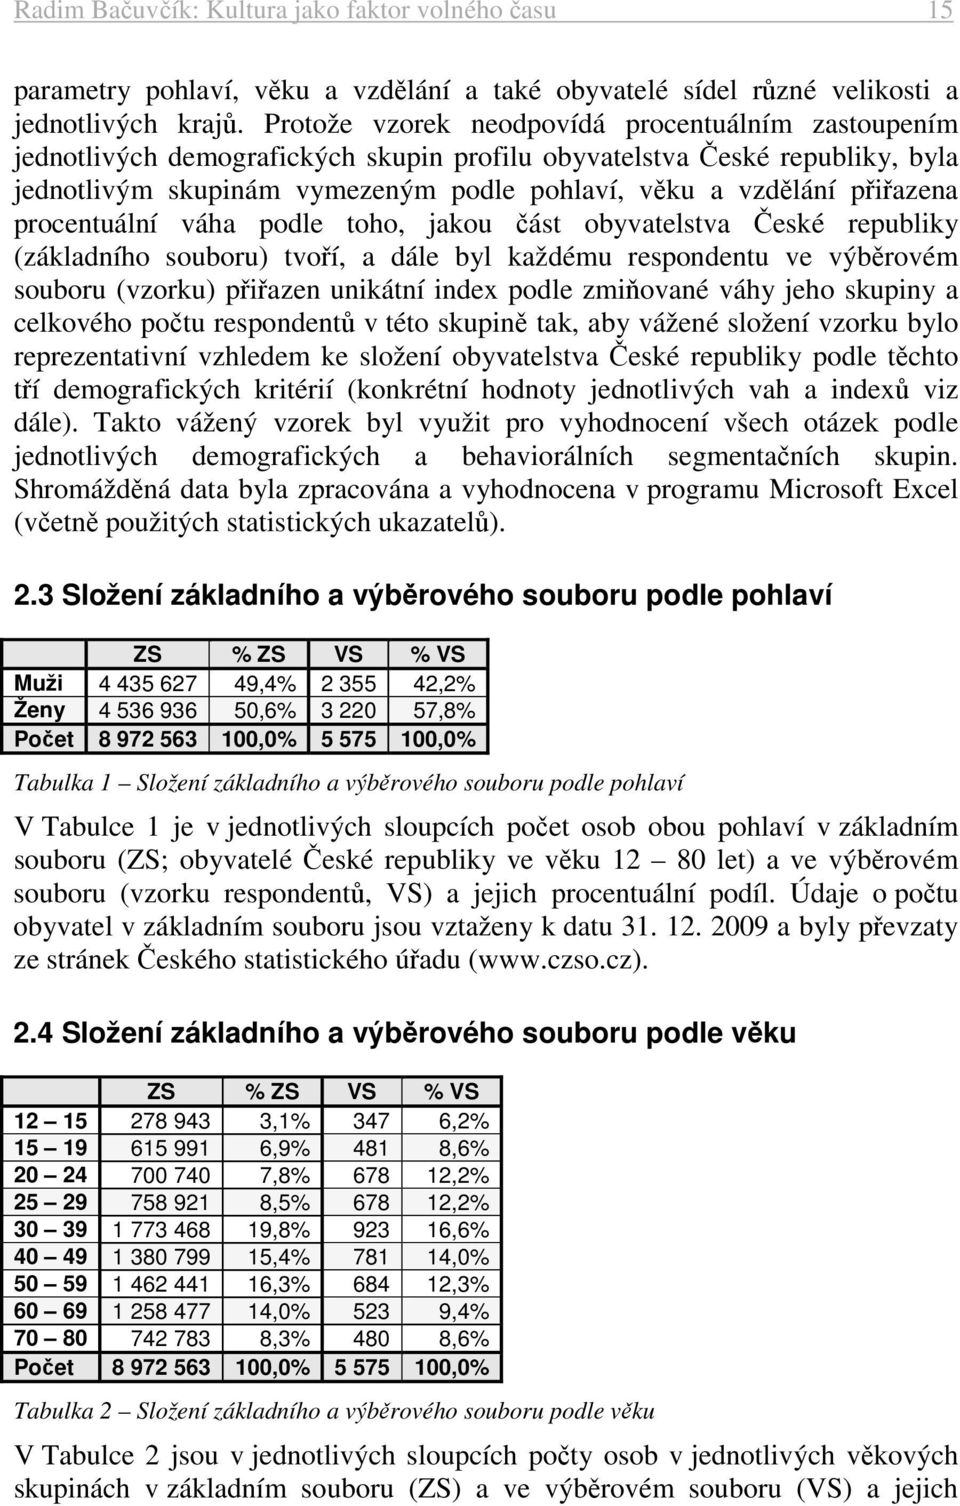 přiřazena procentuální váha podle toho, jakou část obyvatelstva České republiky (základního souboru) tvoří, a dále byl každému respondentu ve výběrovém souboru (vzorku) přiřazen unikátní index podle